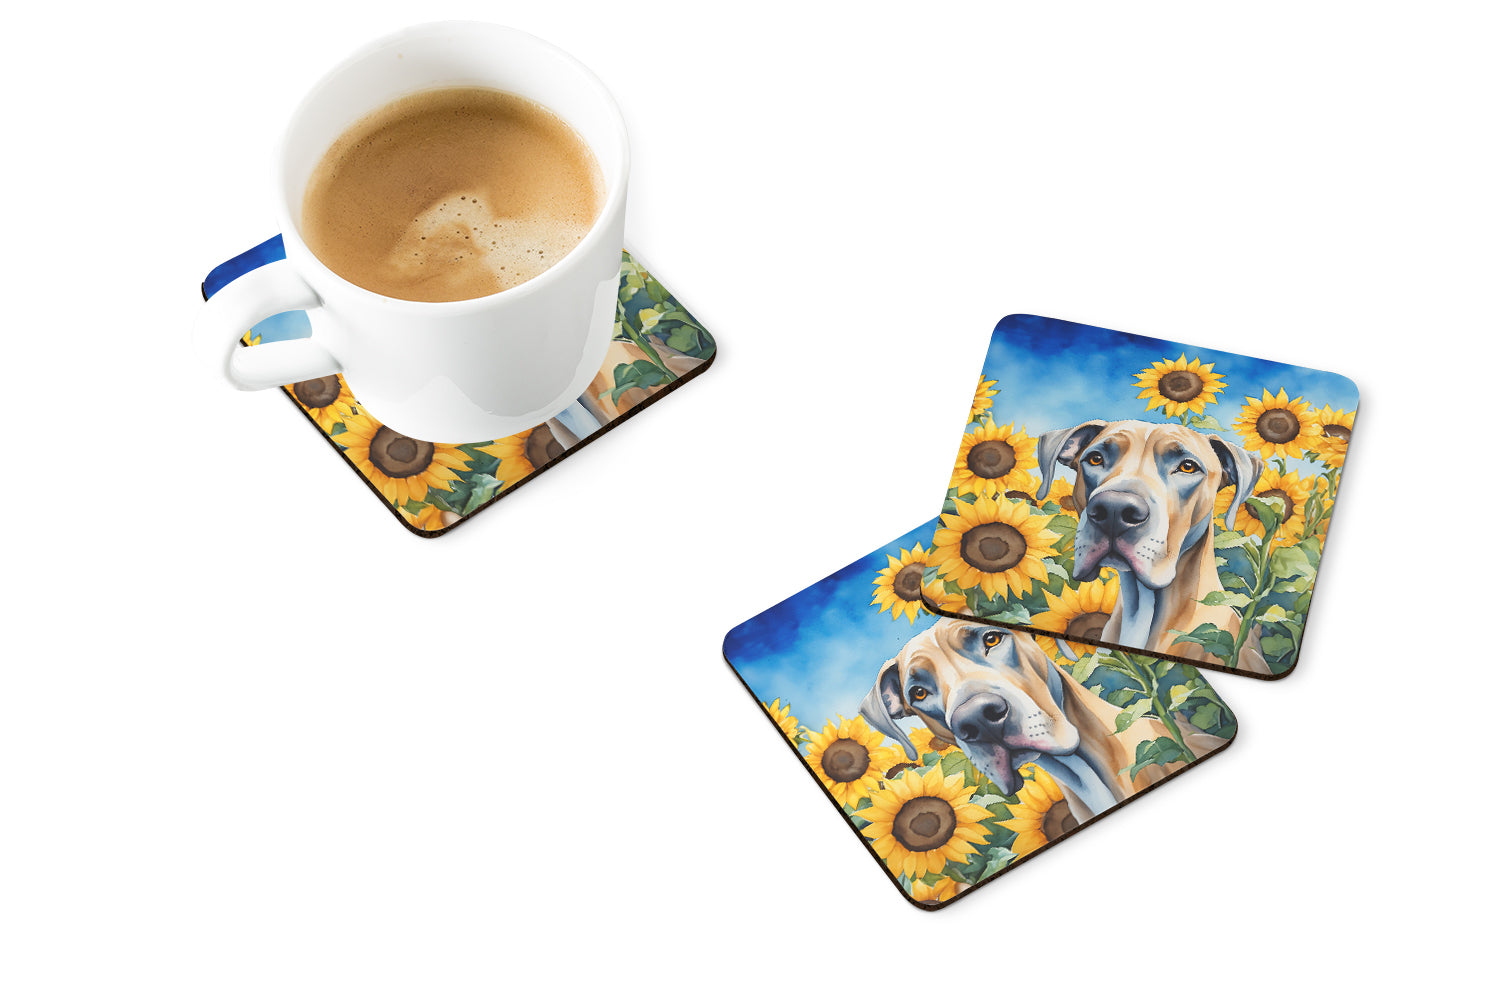 Great Dane in Sunflowers Foam Coasters